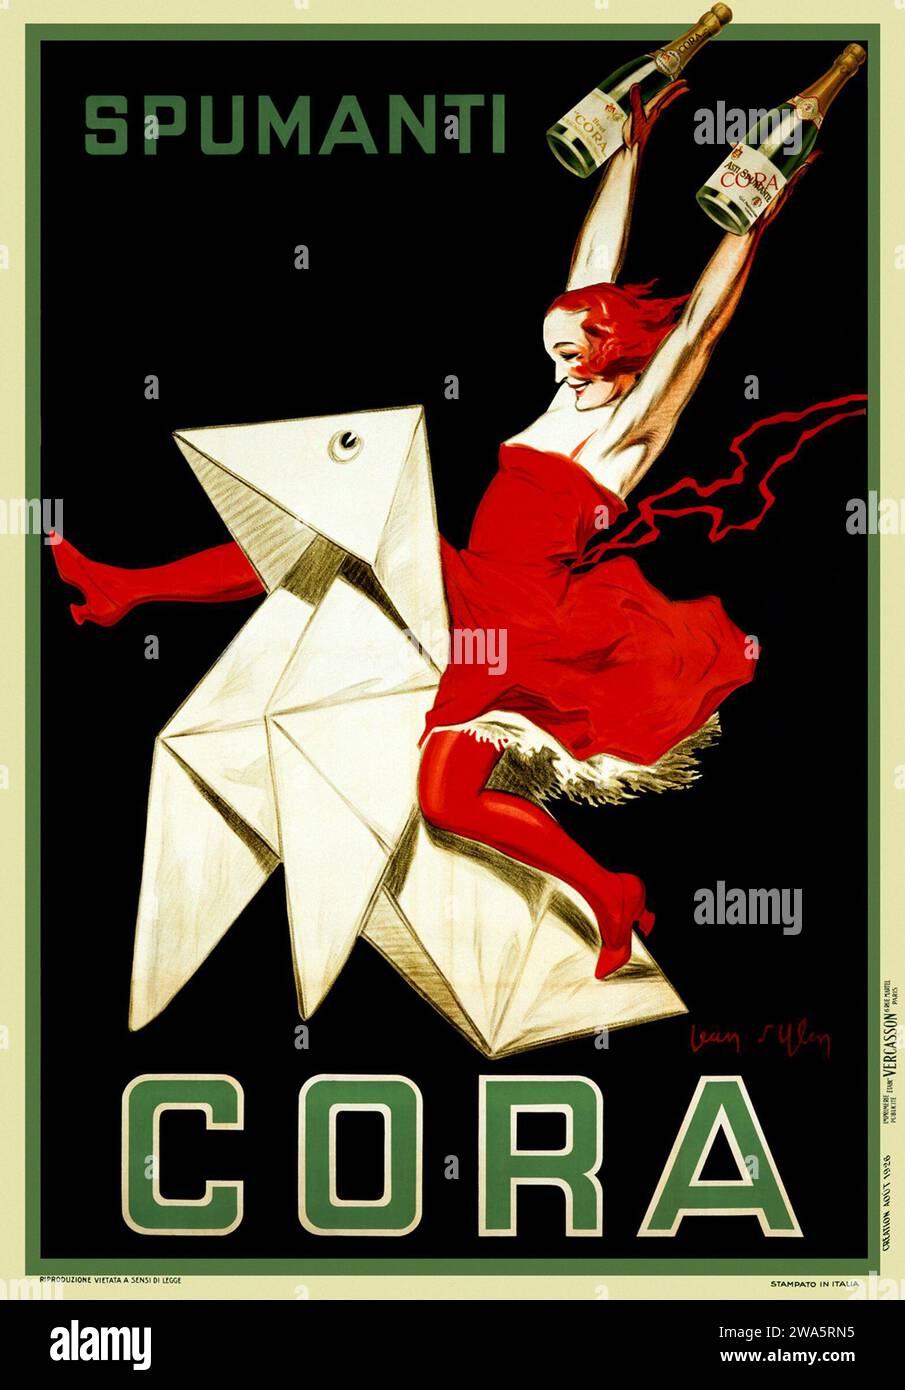 Asti Spumanti Cora - Jean d'Ylen, Italie 1926 - publicité d'alcool vintage Banque D'Images